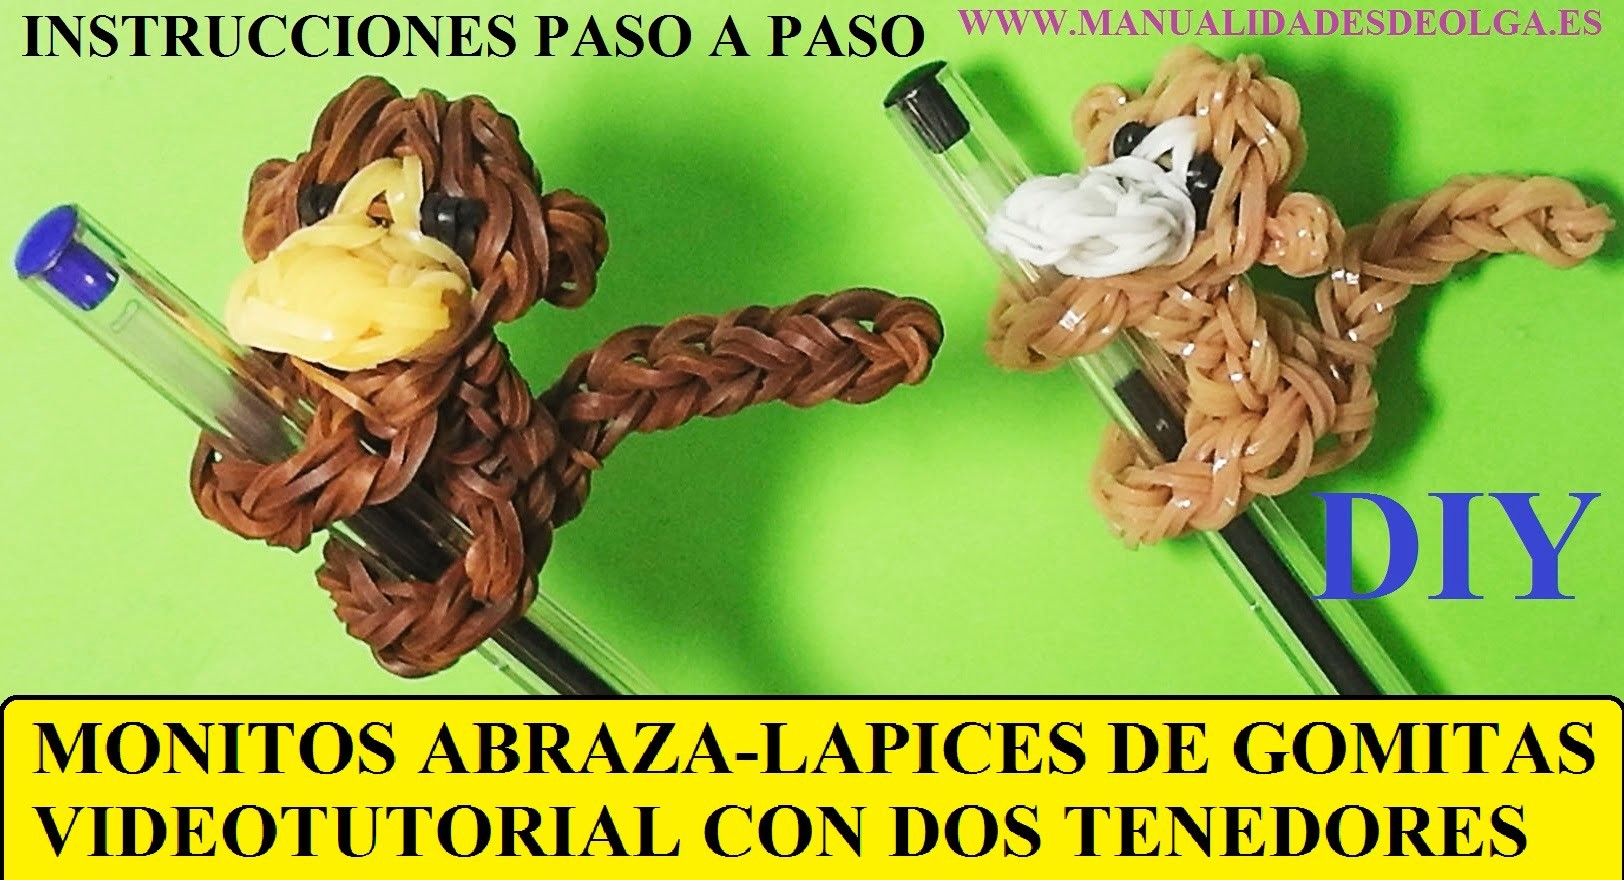 COMO HACER UN MONO ABRAZA-LAPICES DE GOMITAS (LIGAS) (MONKEY CHARM) CON DOS TENEDORES. TUTORIAL DIY